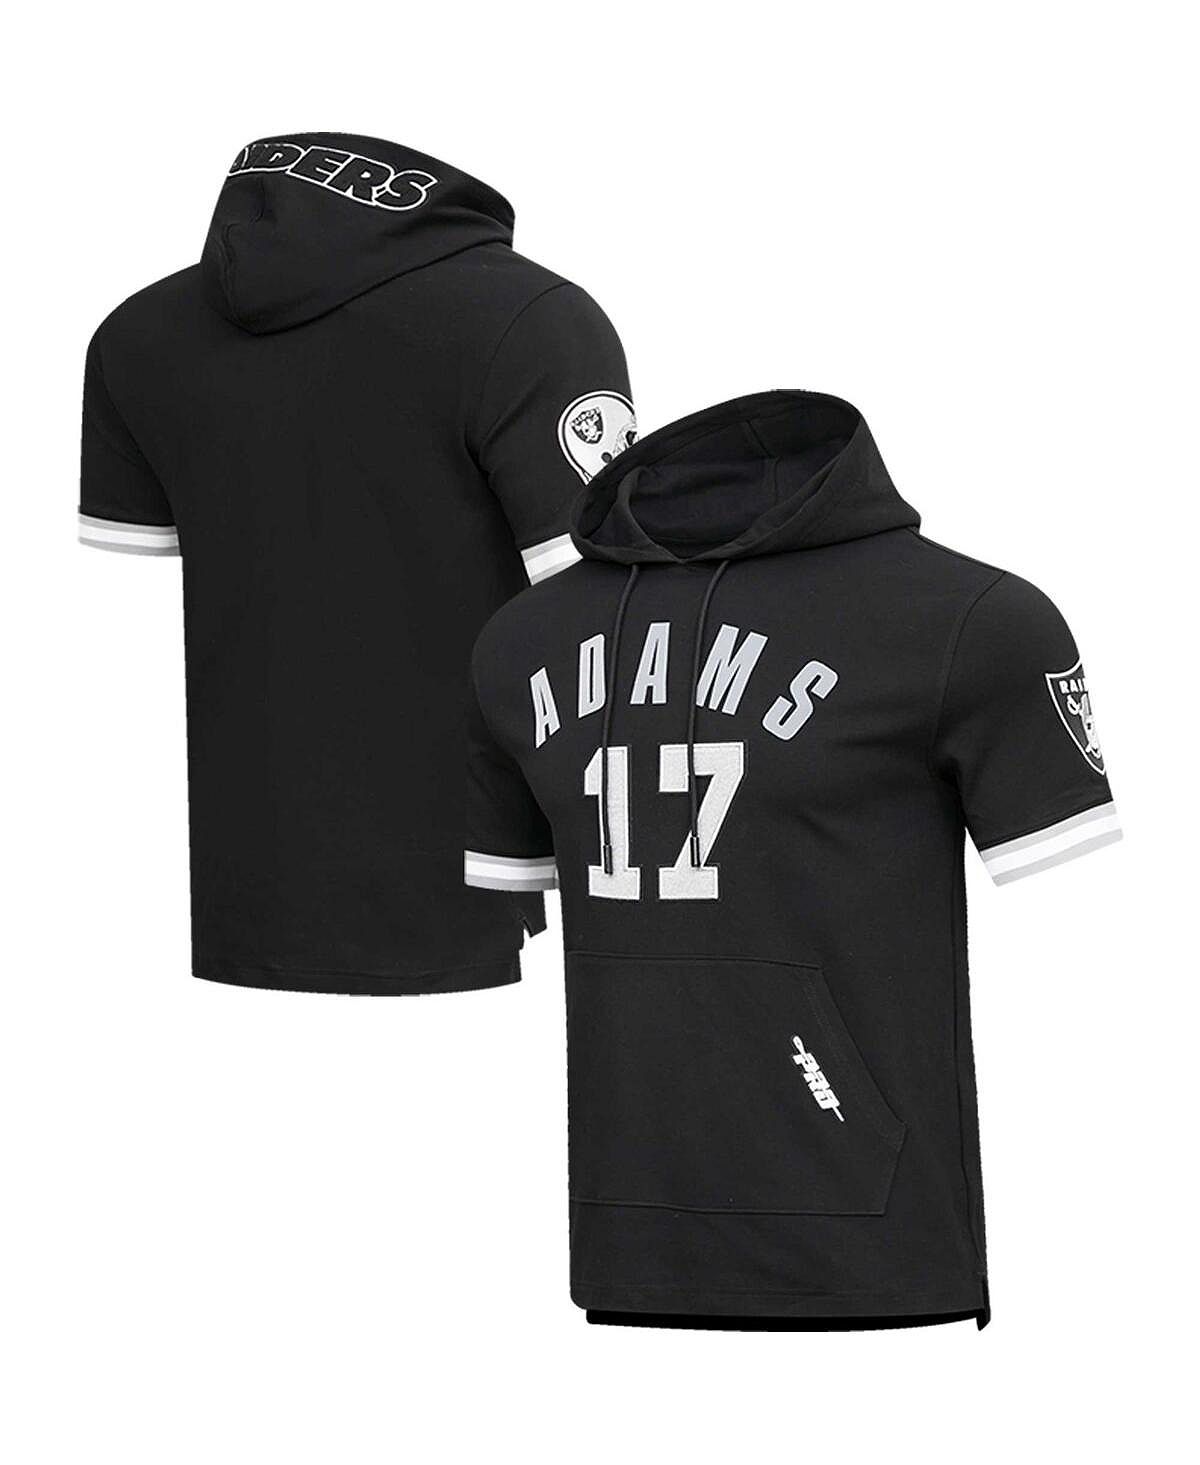 Мужская футболка с капюшоном davante adams black las vegas raiders с именем и номером игрока Pro Standard, черный цена и фото